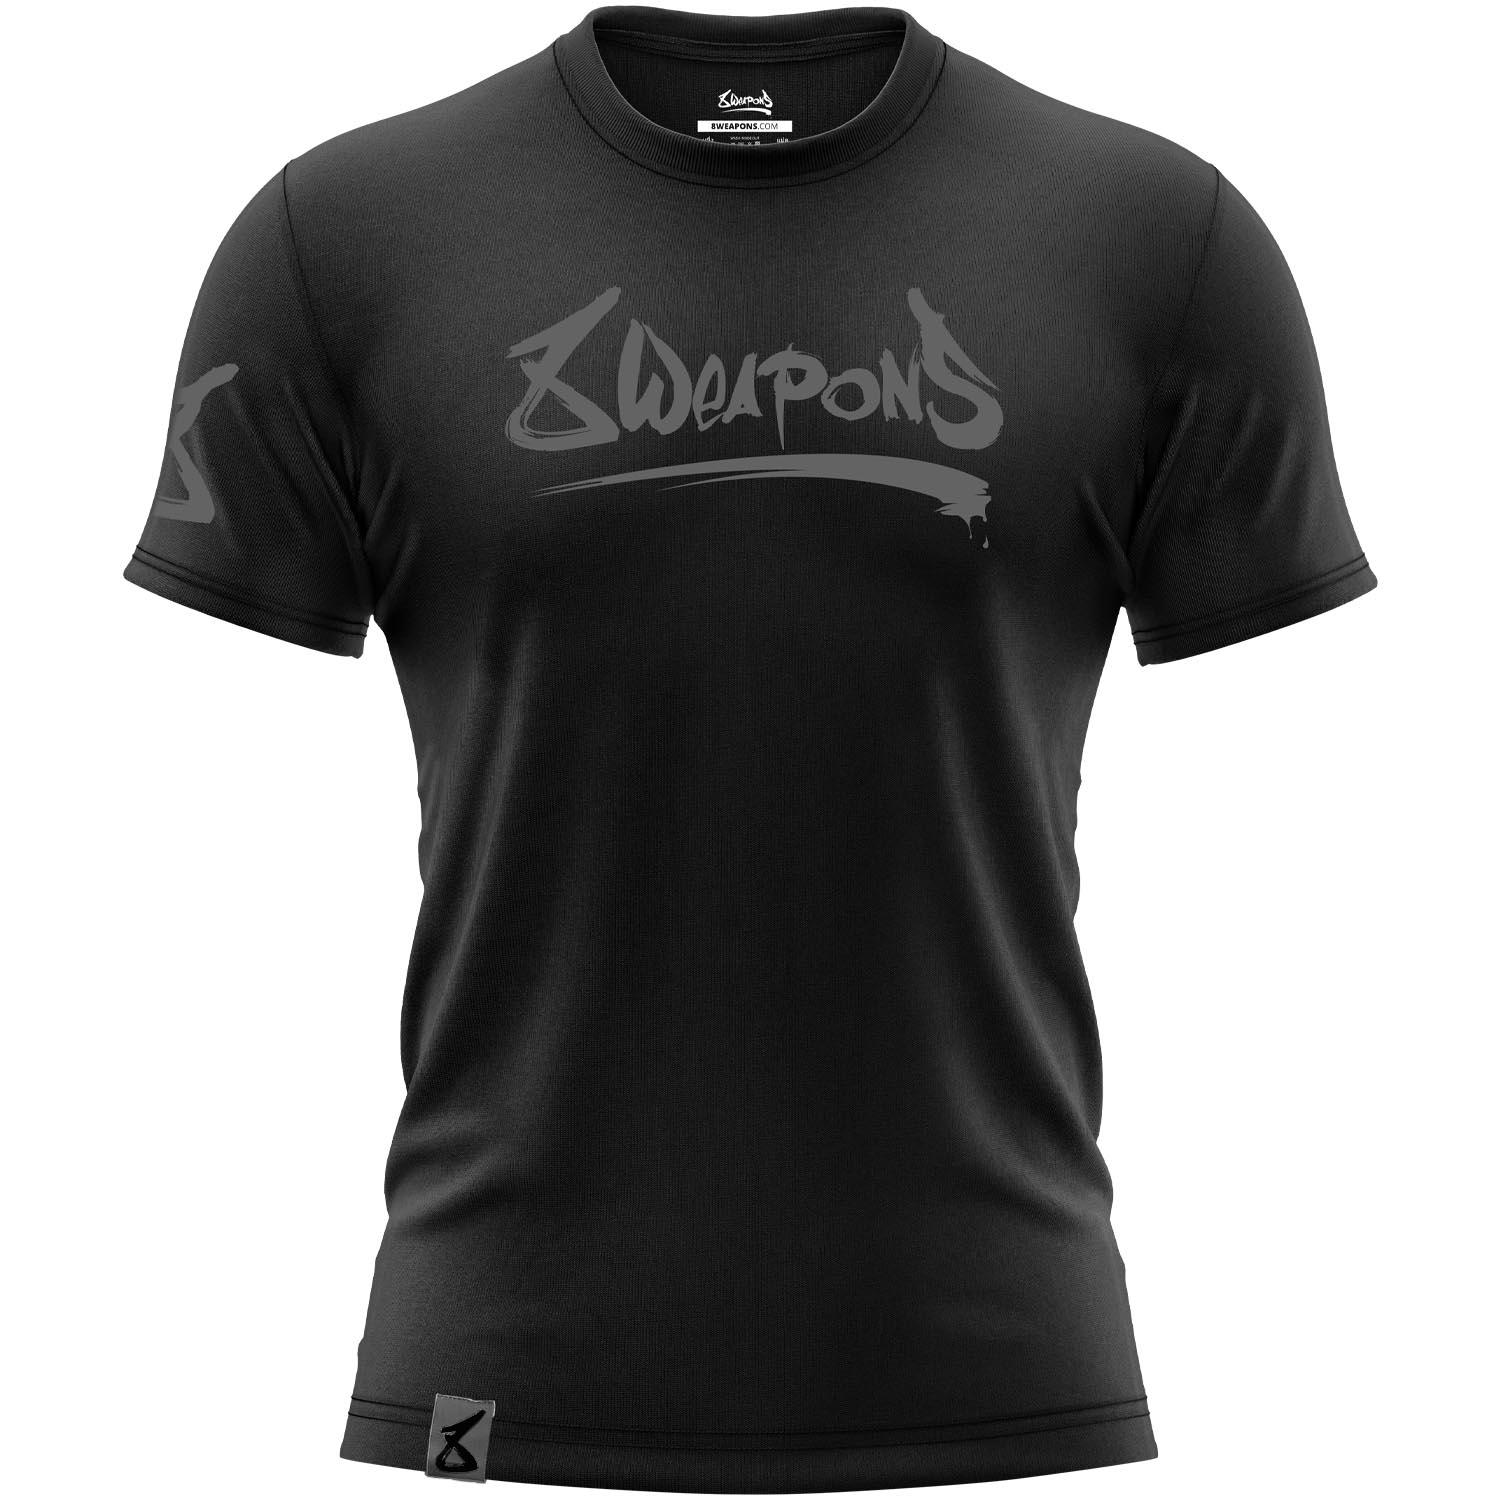 8 WEAPONS T-Shirt, Unlimited 2.0, schwarz-matt